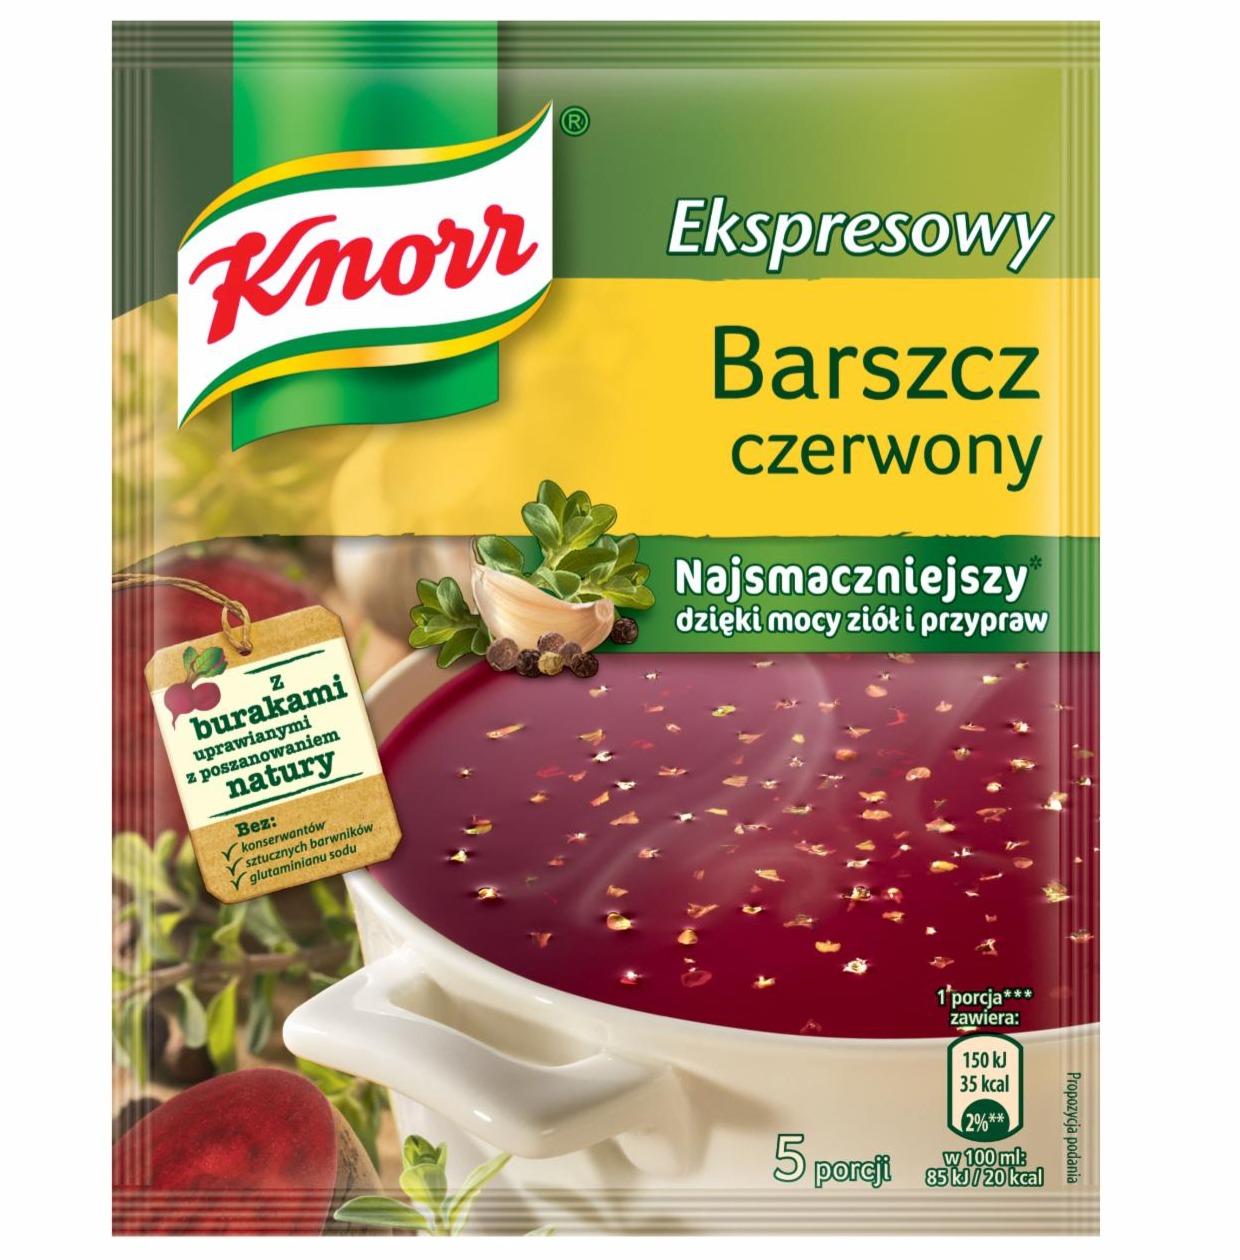 Zdjęcia - Barszcz czerwony ekspresowy Knorr